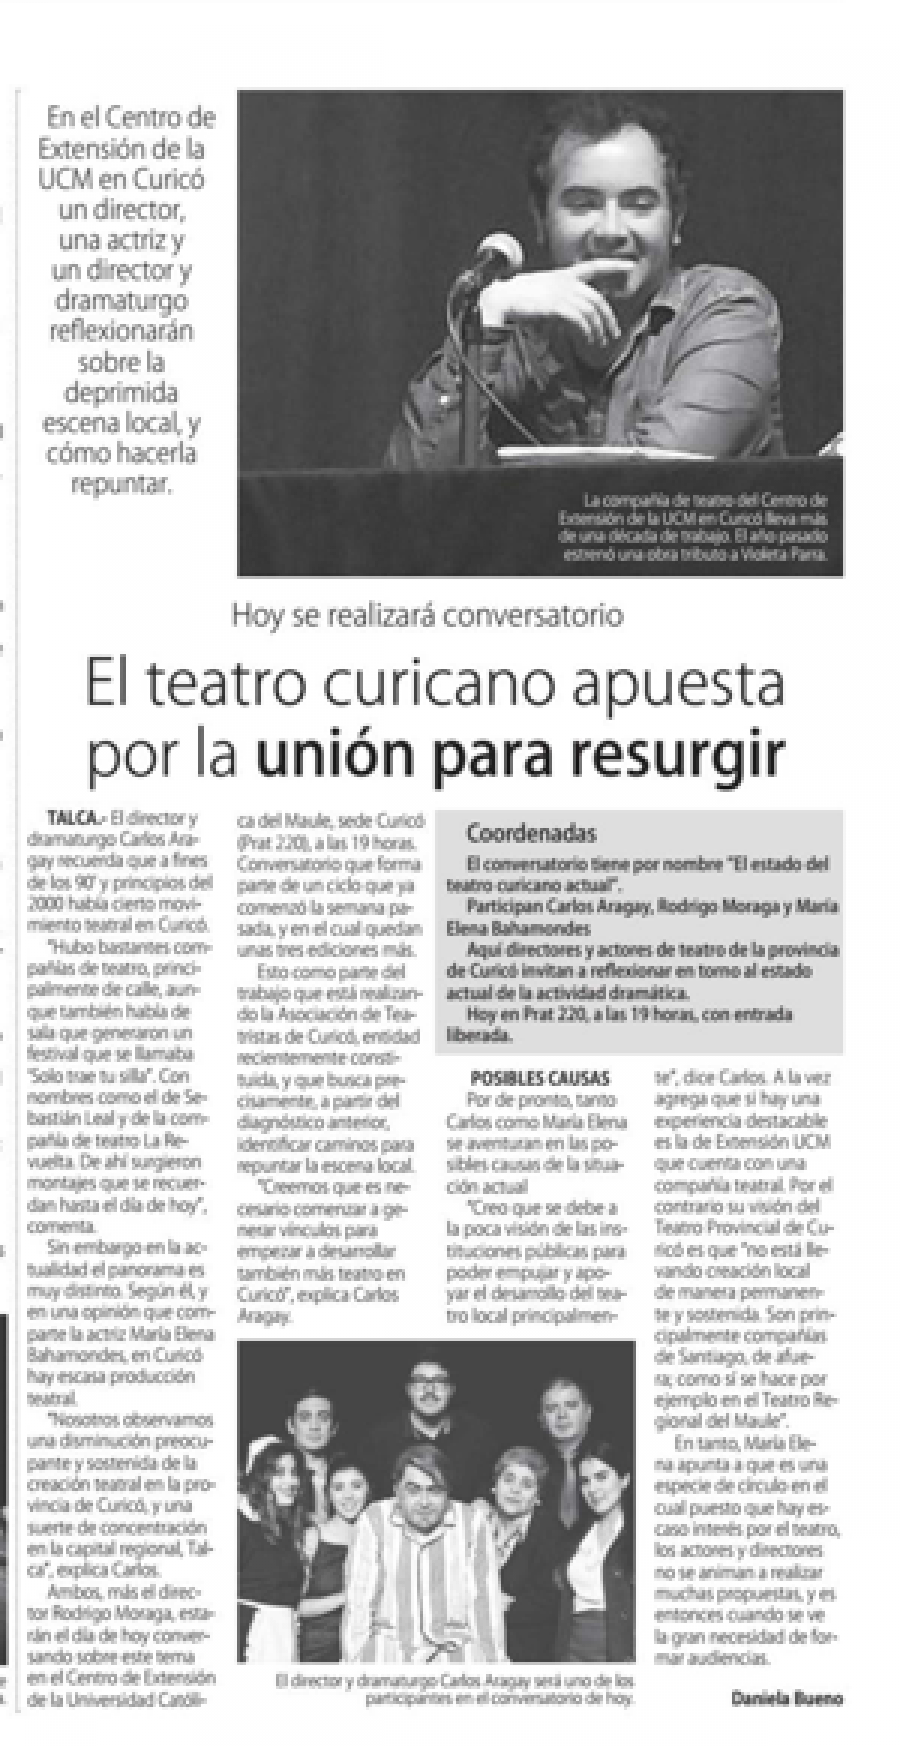 26 de julio en Diario El Centro: “El teatro curicano apuesta por la unión para resurgir”